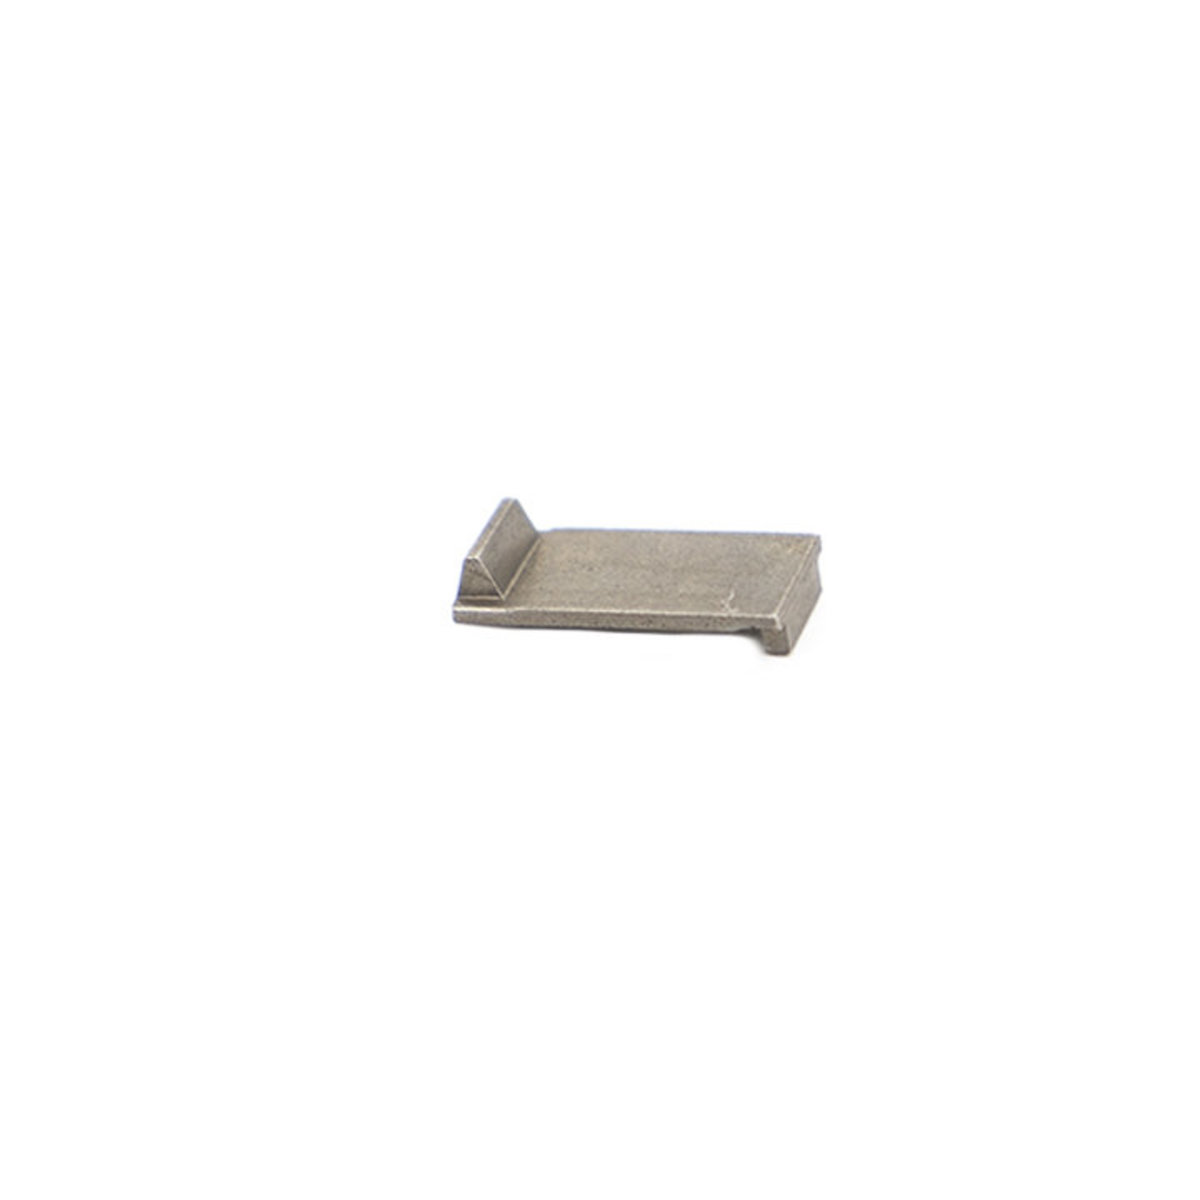 Rifle Parts - Battle Machine Mod Piston Steel Tooth